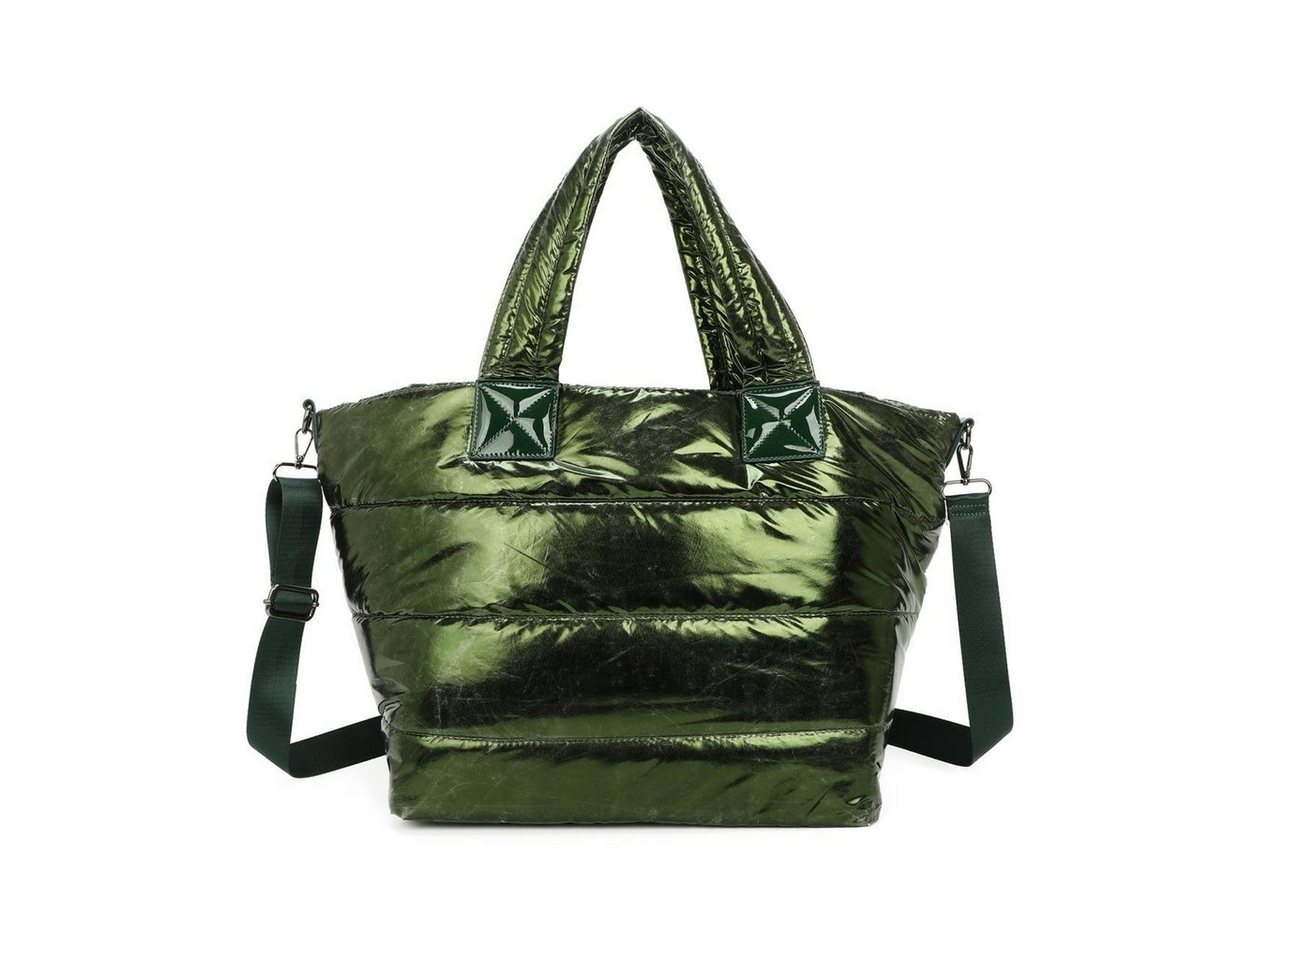 ITALYSHOP24 Schultertasche XL Damen Nylontasche Shopper Strandtasche glänzend, als Handtasche, Umhängetasche, Reisetasche, Weekender von ITALYSHOP24